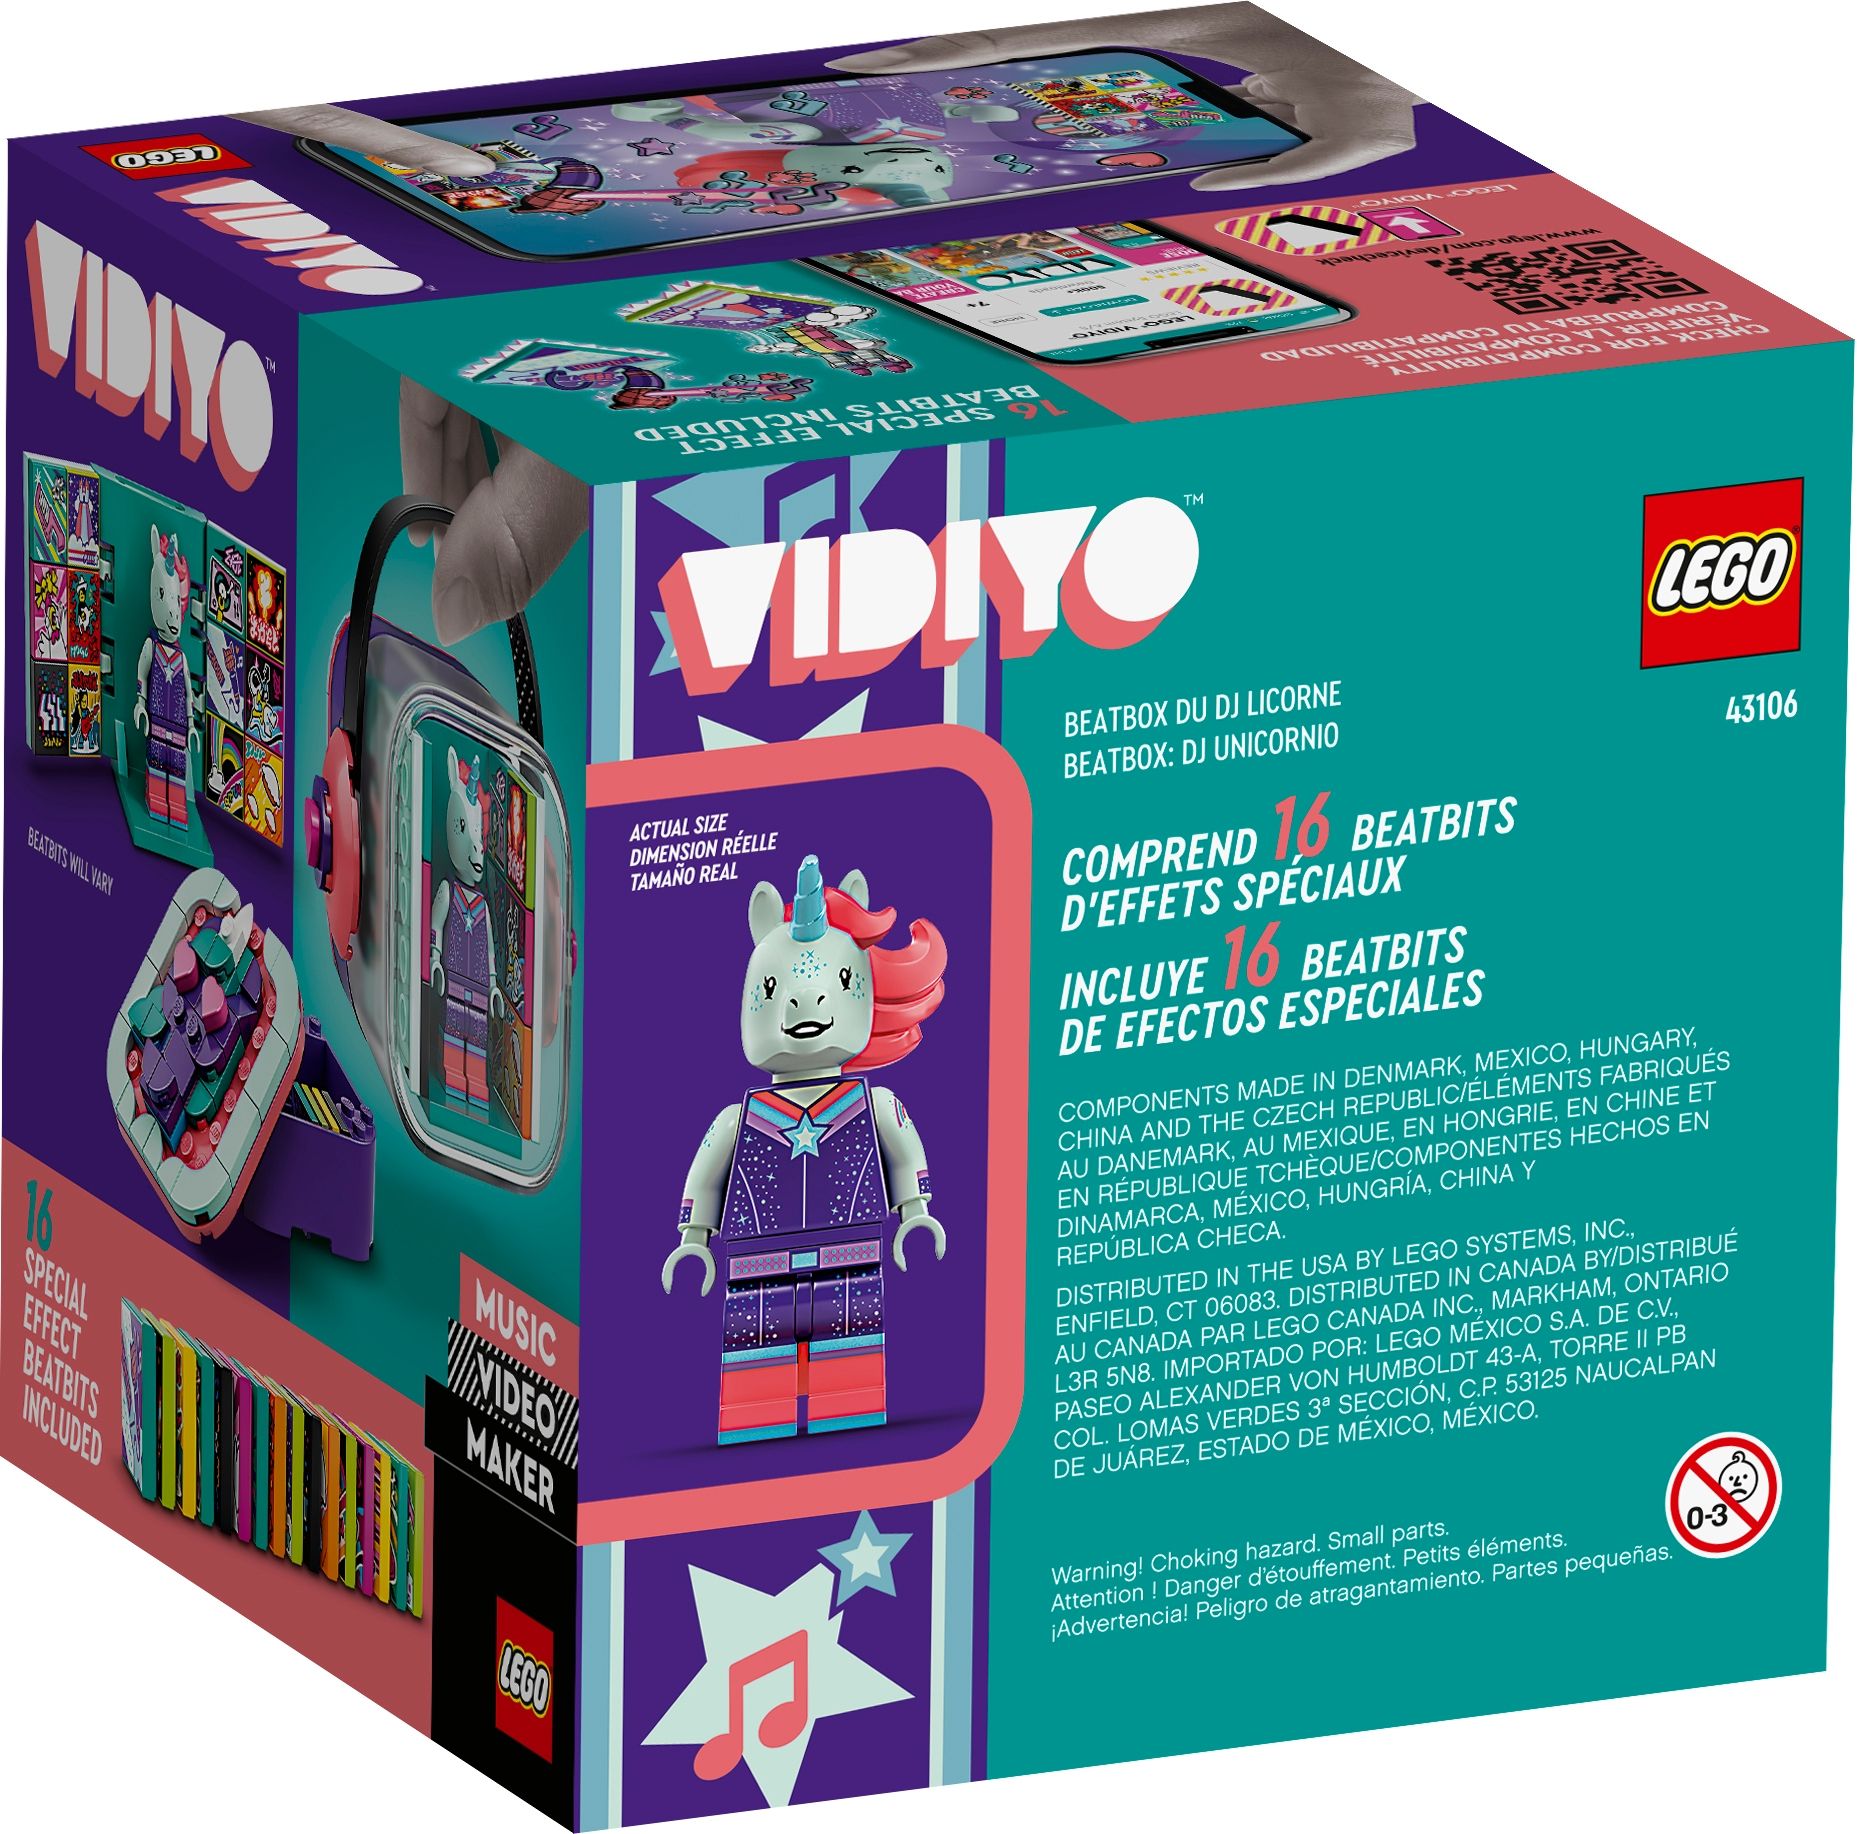 LEGO Vidiyo 43106 Unicorn DJ BeatBox LEGO_43106_box5_v39.jpg